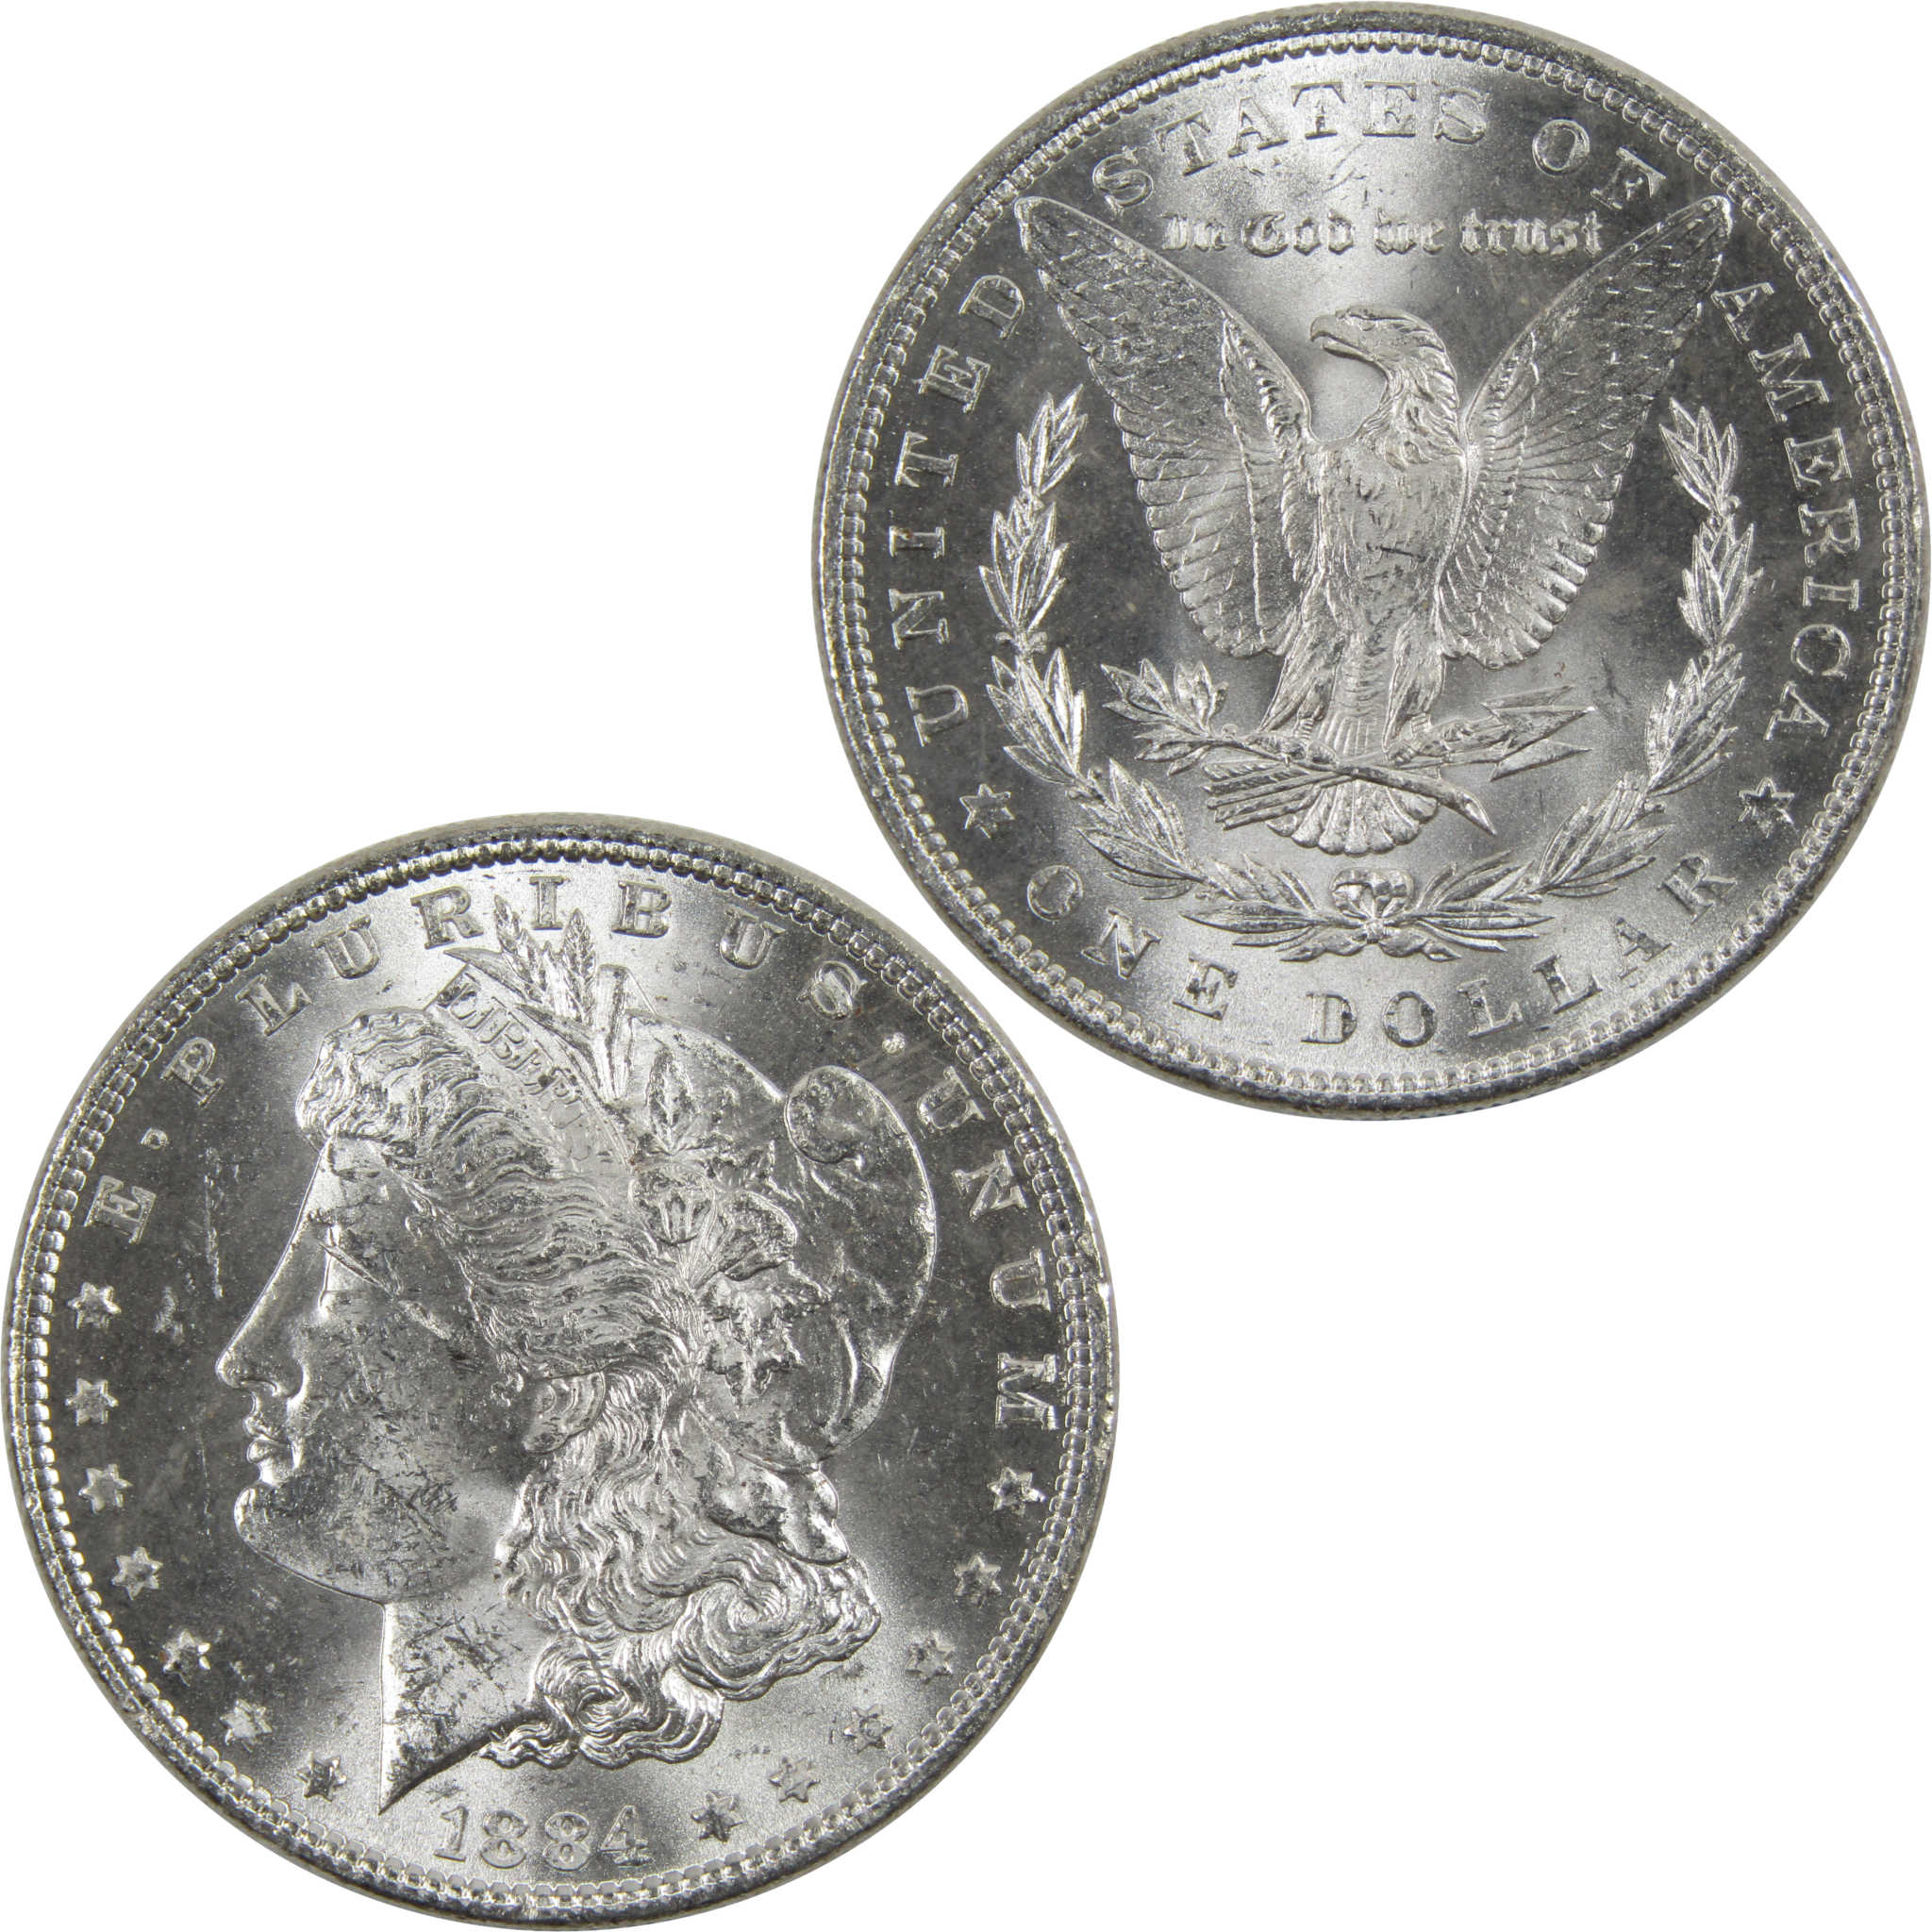 1884 Morgan Dollar BU Uncirculated 90% Silver $1 Coin SKU:I6019 - Morgan coin - Morgan silver dollar - Morgan silver dollar for sale - Profile Coins &amp; Collectibles